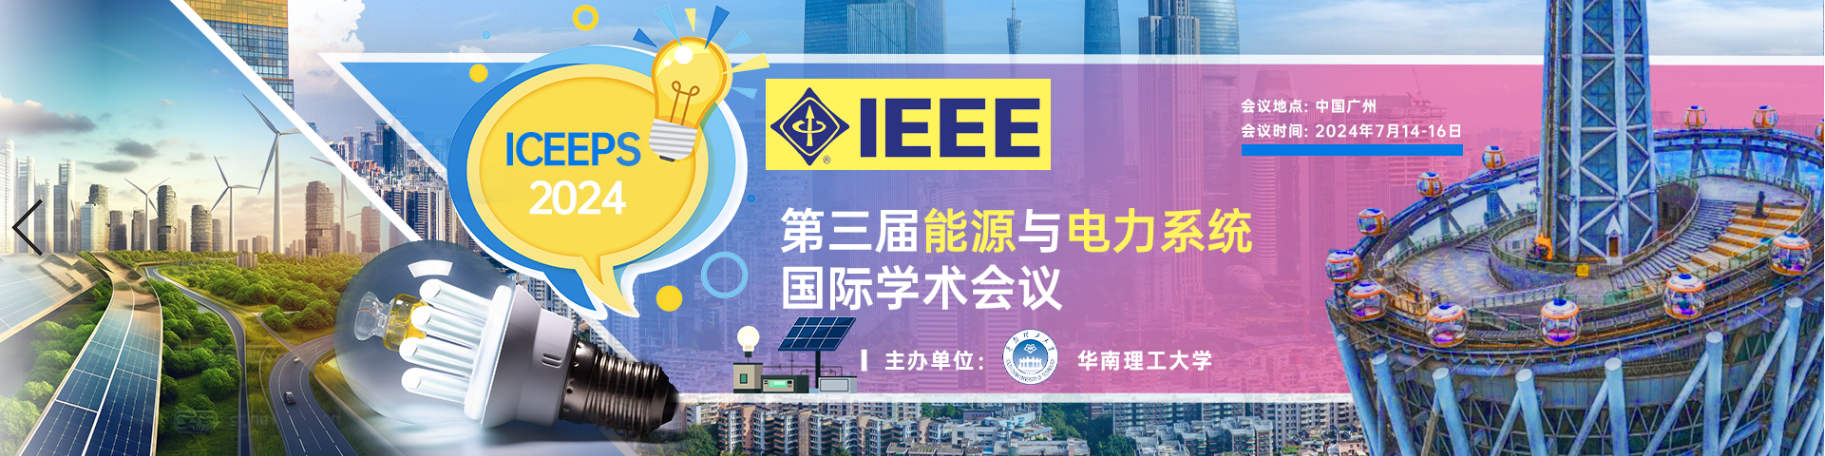 【会议征稿，IEEE出版】第三届能源与电力系统国际学术会议 (ICEEPS 2024，7月14-16)